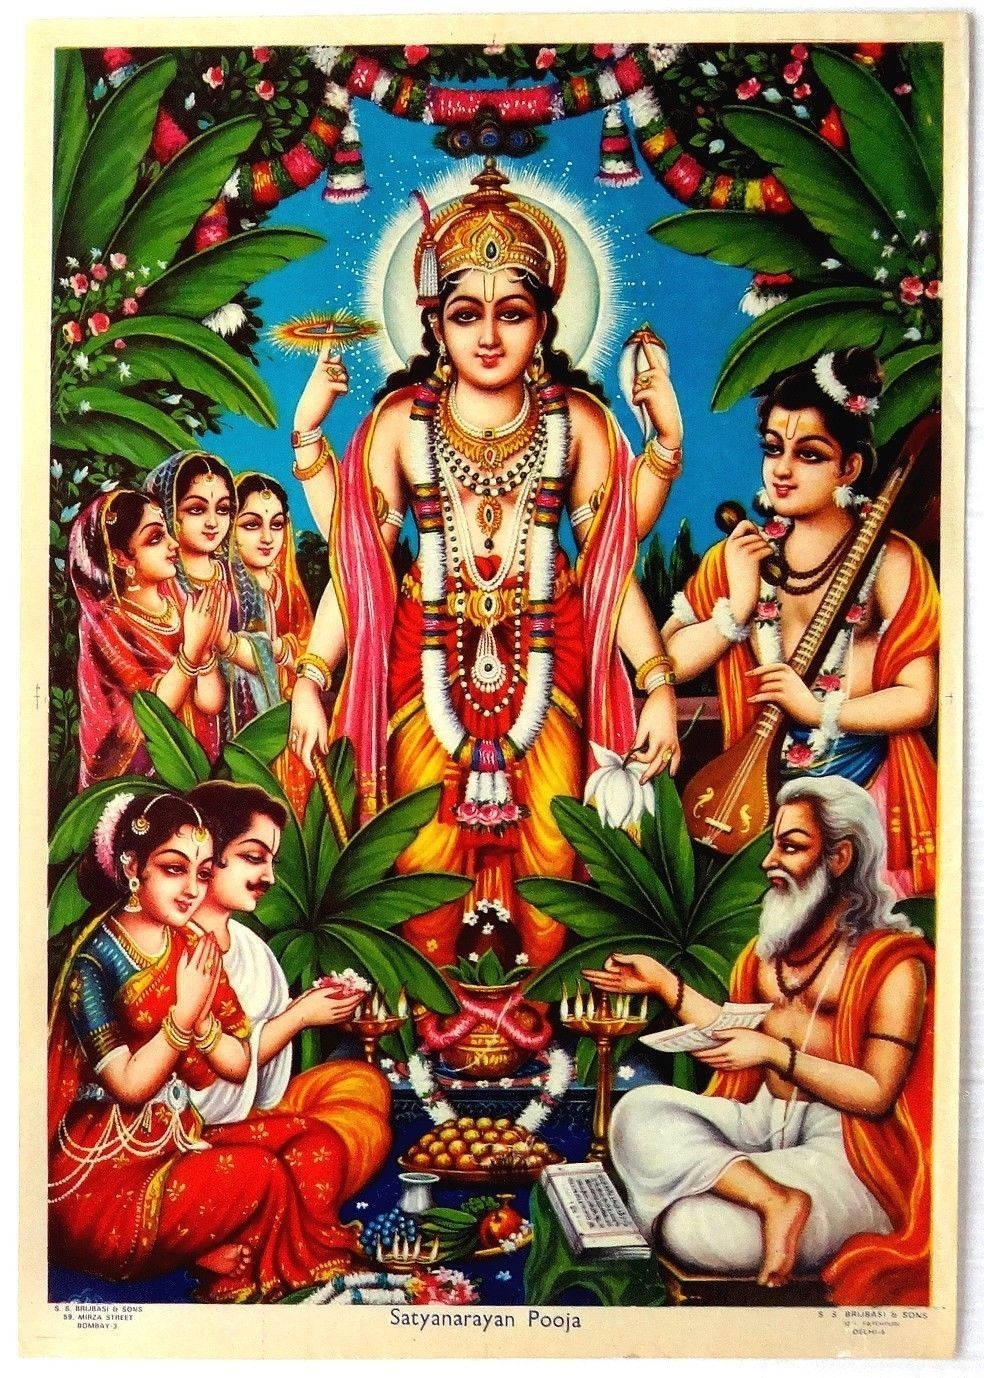 Satyanarayanaswamy-fest Är En Hinduisk Festival Som Firas Med Stor Iver. Om Du Vill Ha En Dator- Eller Mobilbakgrund Som Passar Den Festliga Känslan, Kan Du Söka Efter 